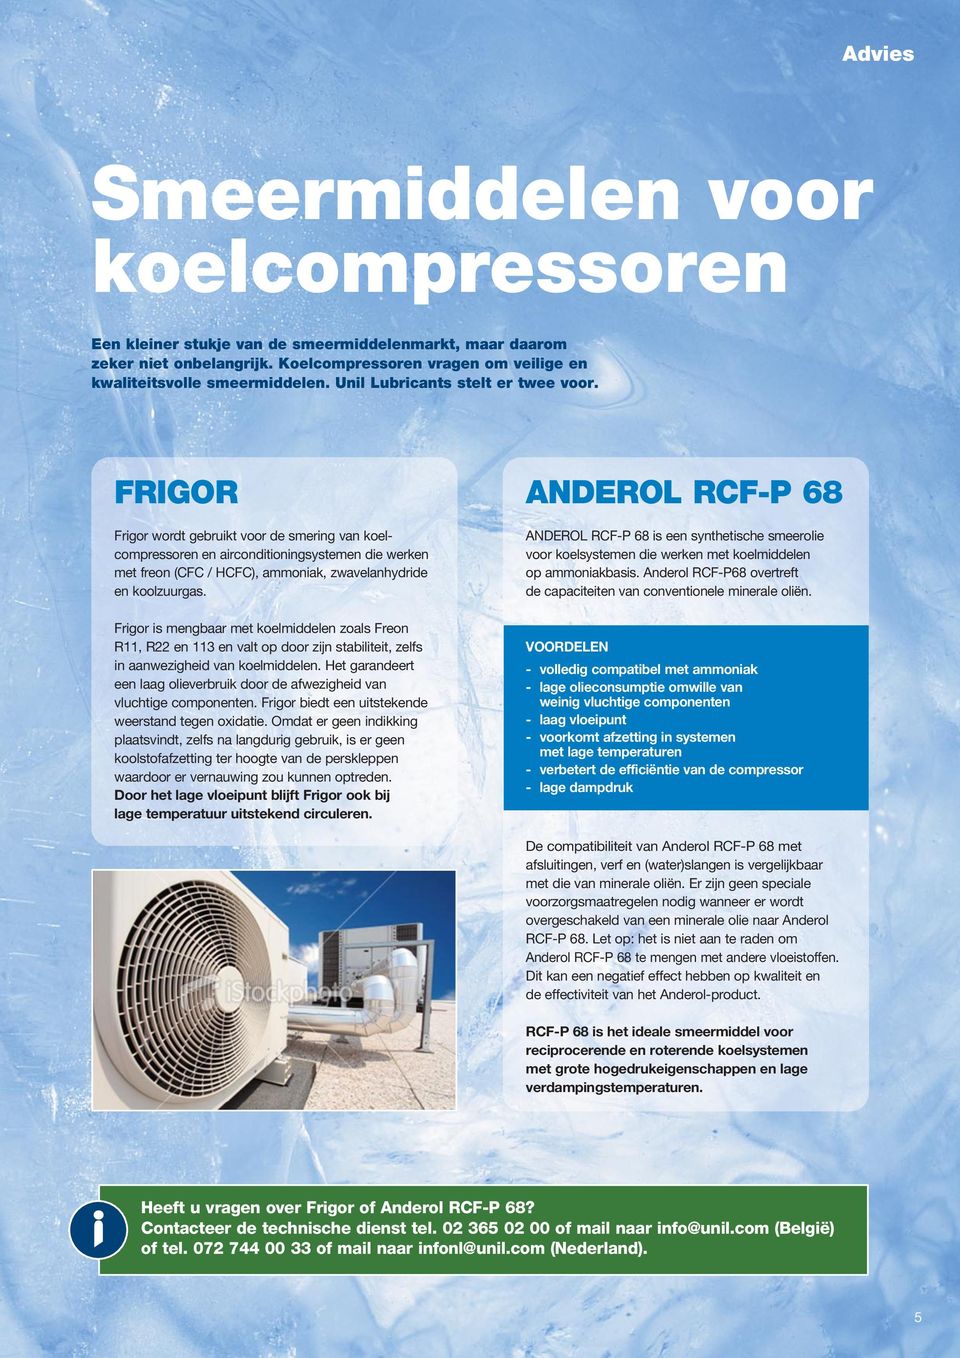 FRIGOR Frigor wordt gebruikt voor de smering van koel - compressoren en airconditioningsystemen die werken met freon (CFC / HCFC), ammoniak, zwavelanhydride en koolzuurgas.